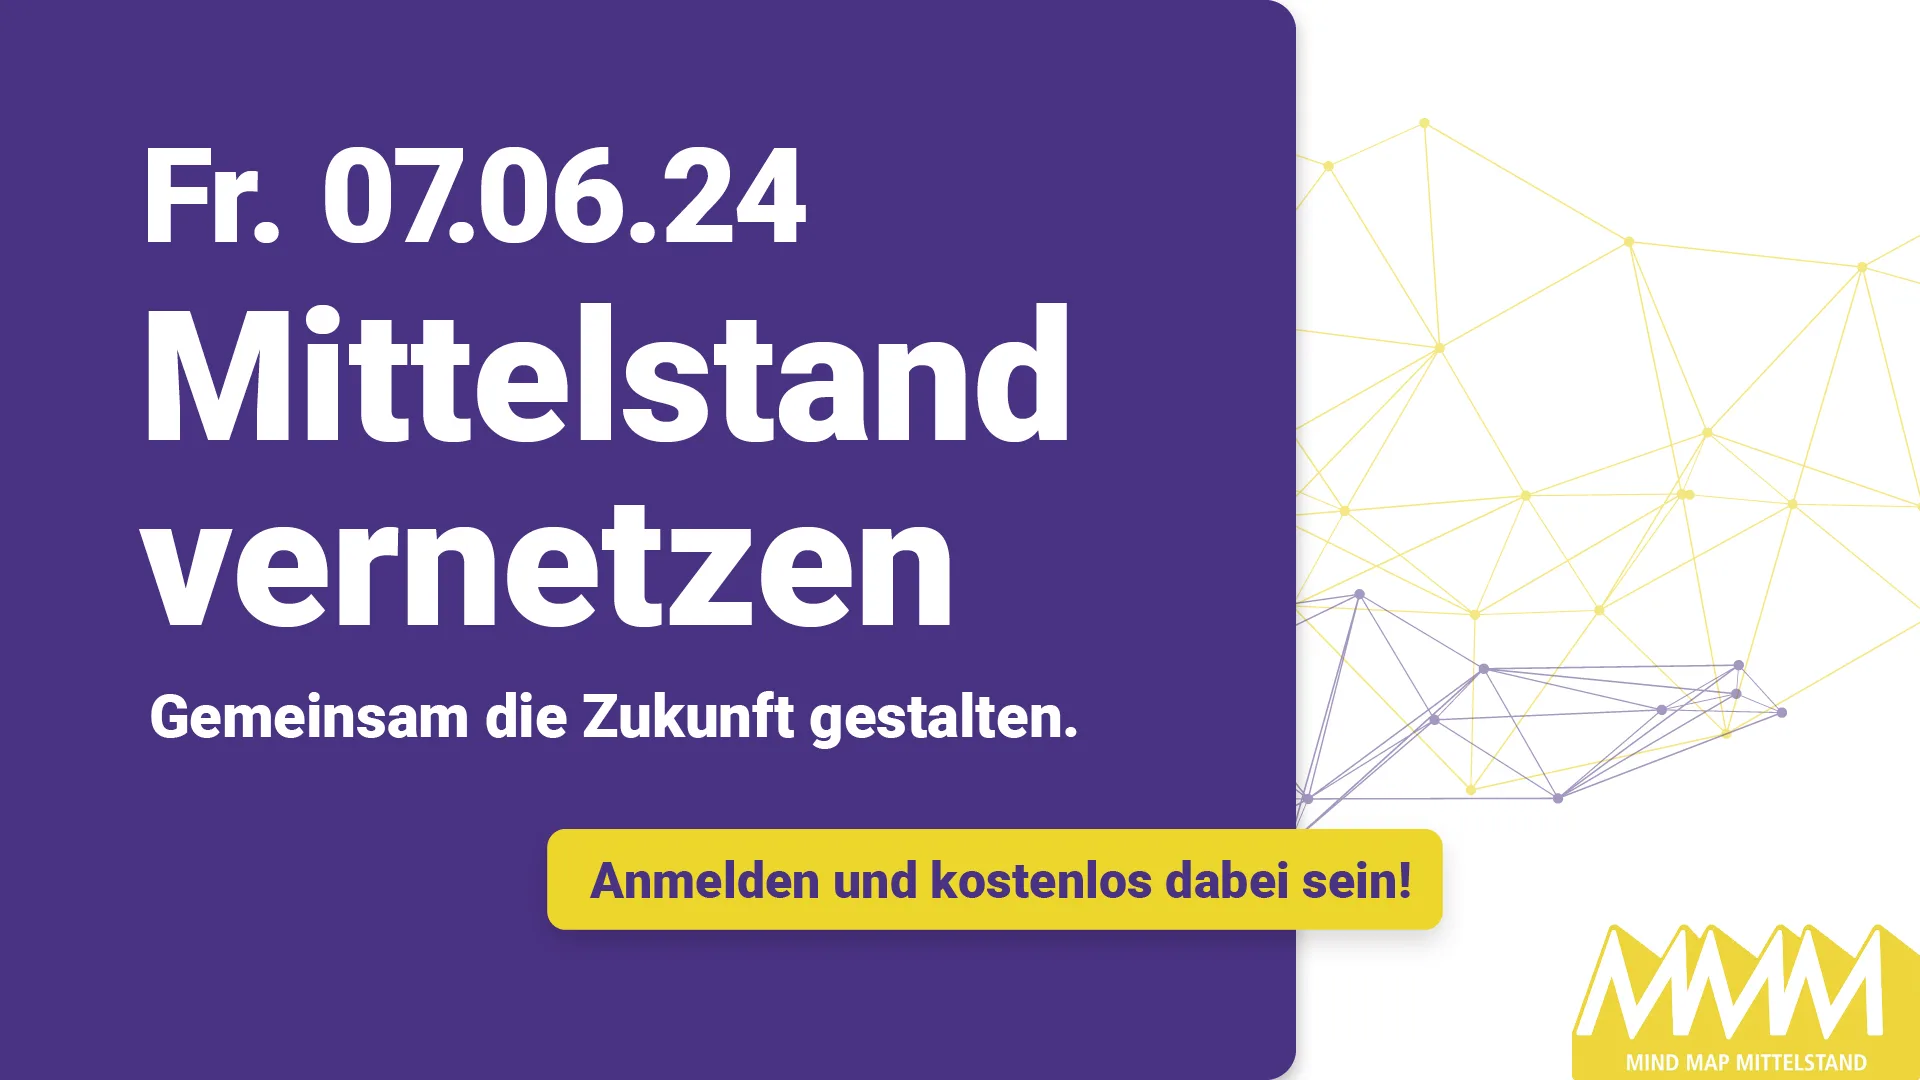 MIND MAP MITTELSTAND - die kostenlose Netzwerkveranstaltung für den Mittelstand am 07.06.2024 in Engen im Hegau statt.